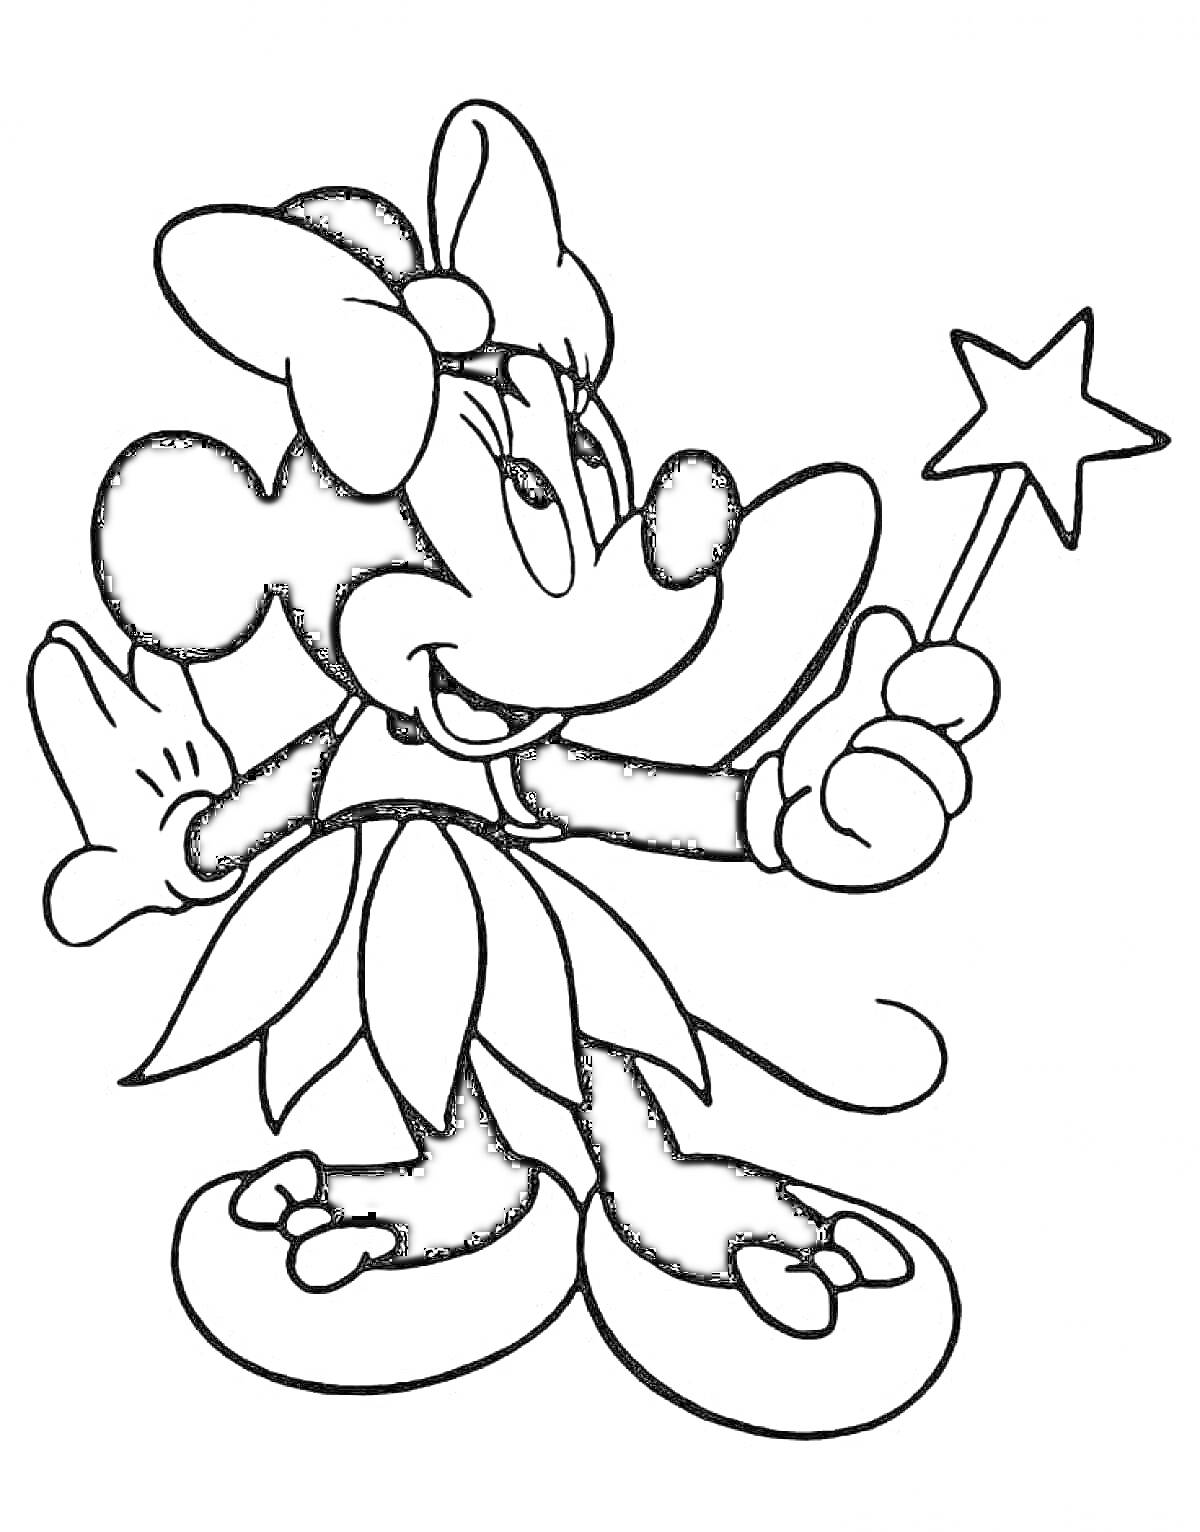 Раскраска Минни Маус с волшебной палочкой в цветочном наряде